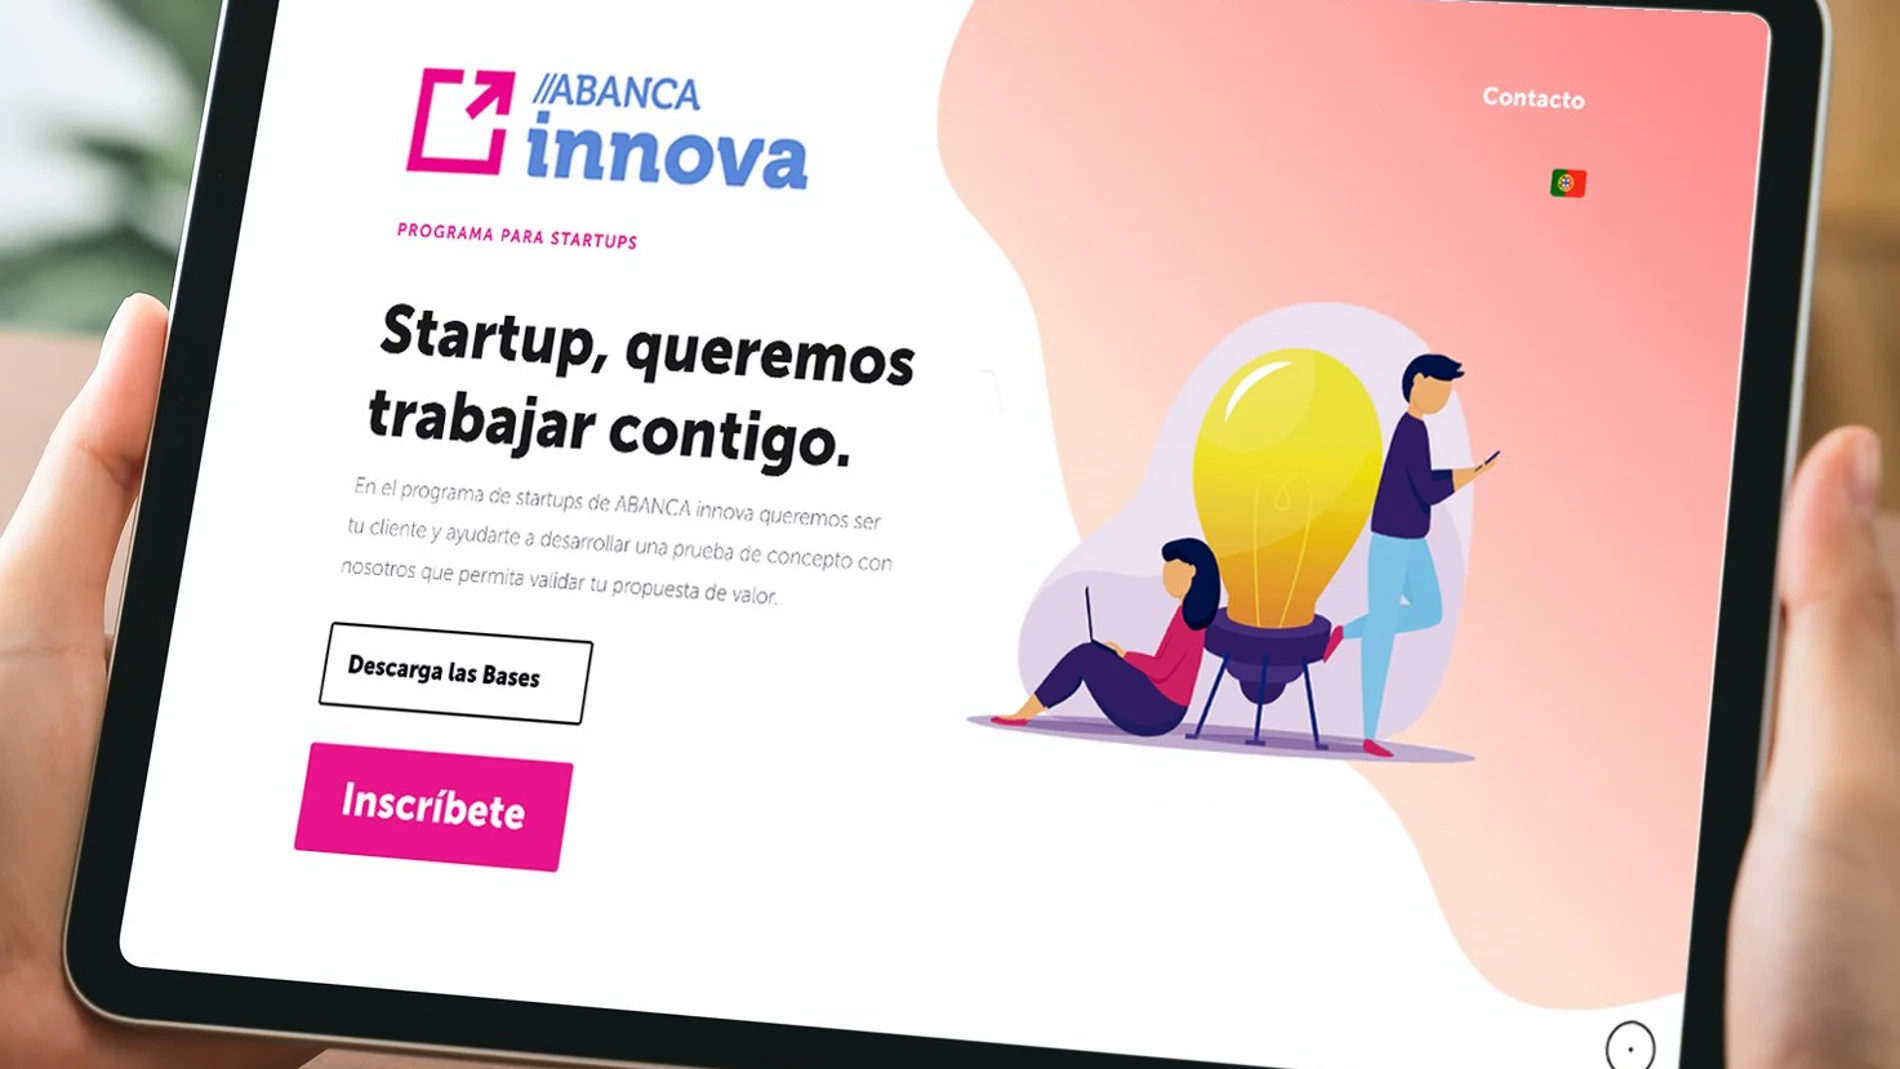 ABANCA startups innovación